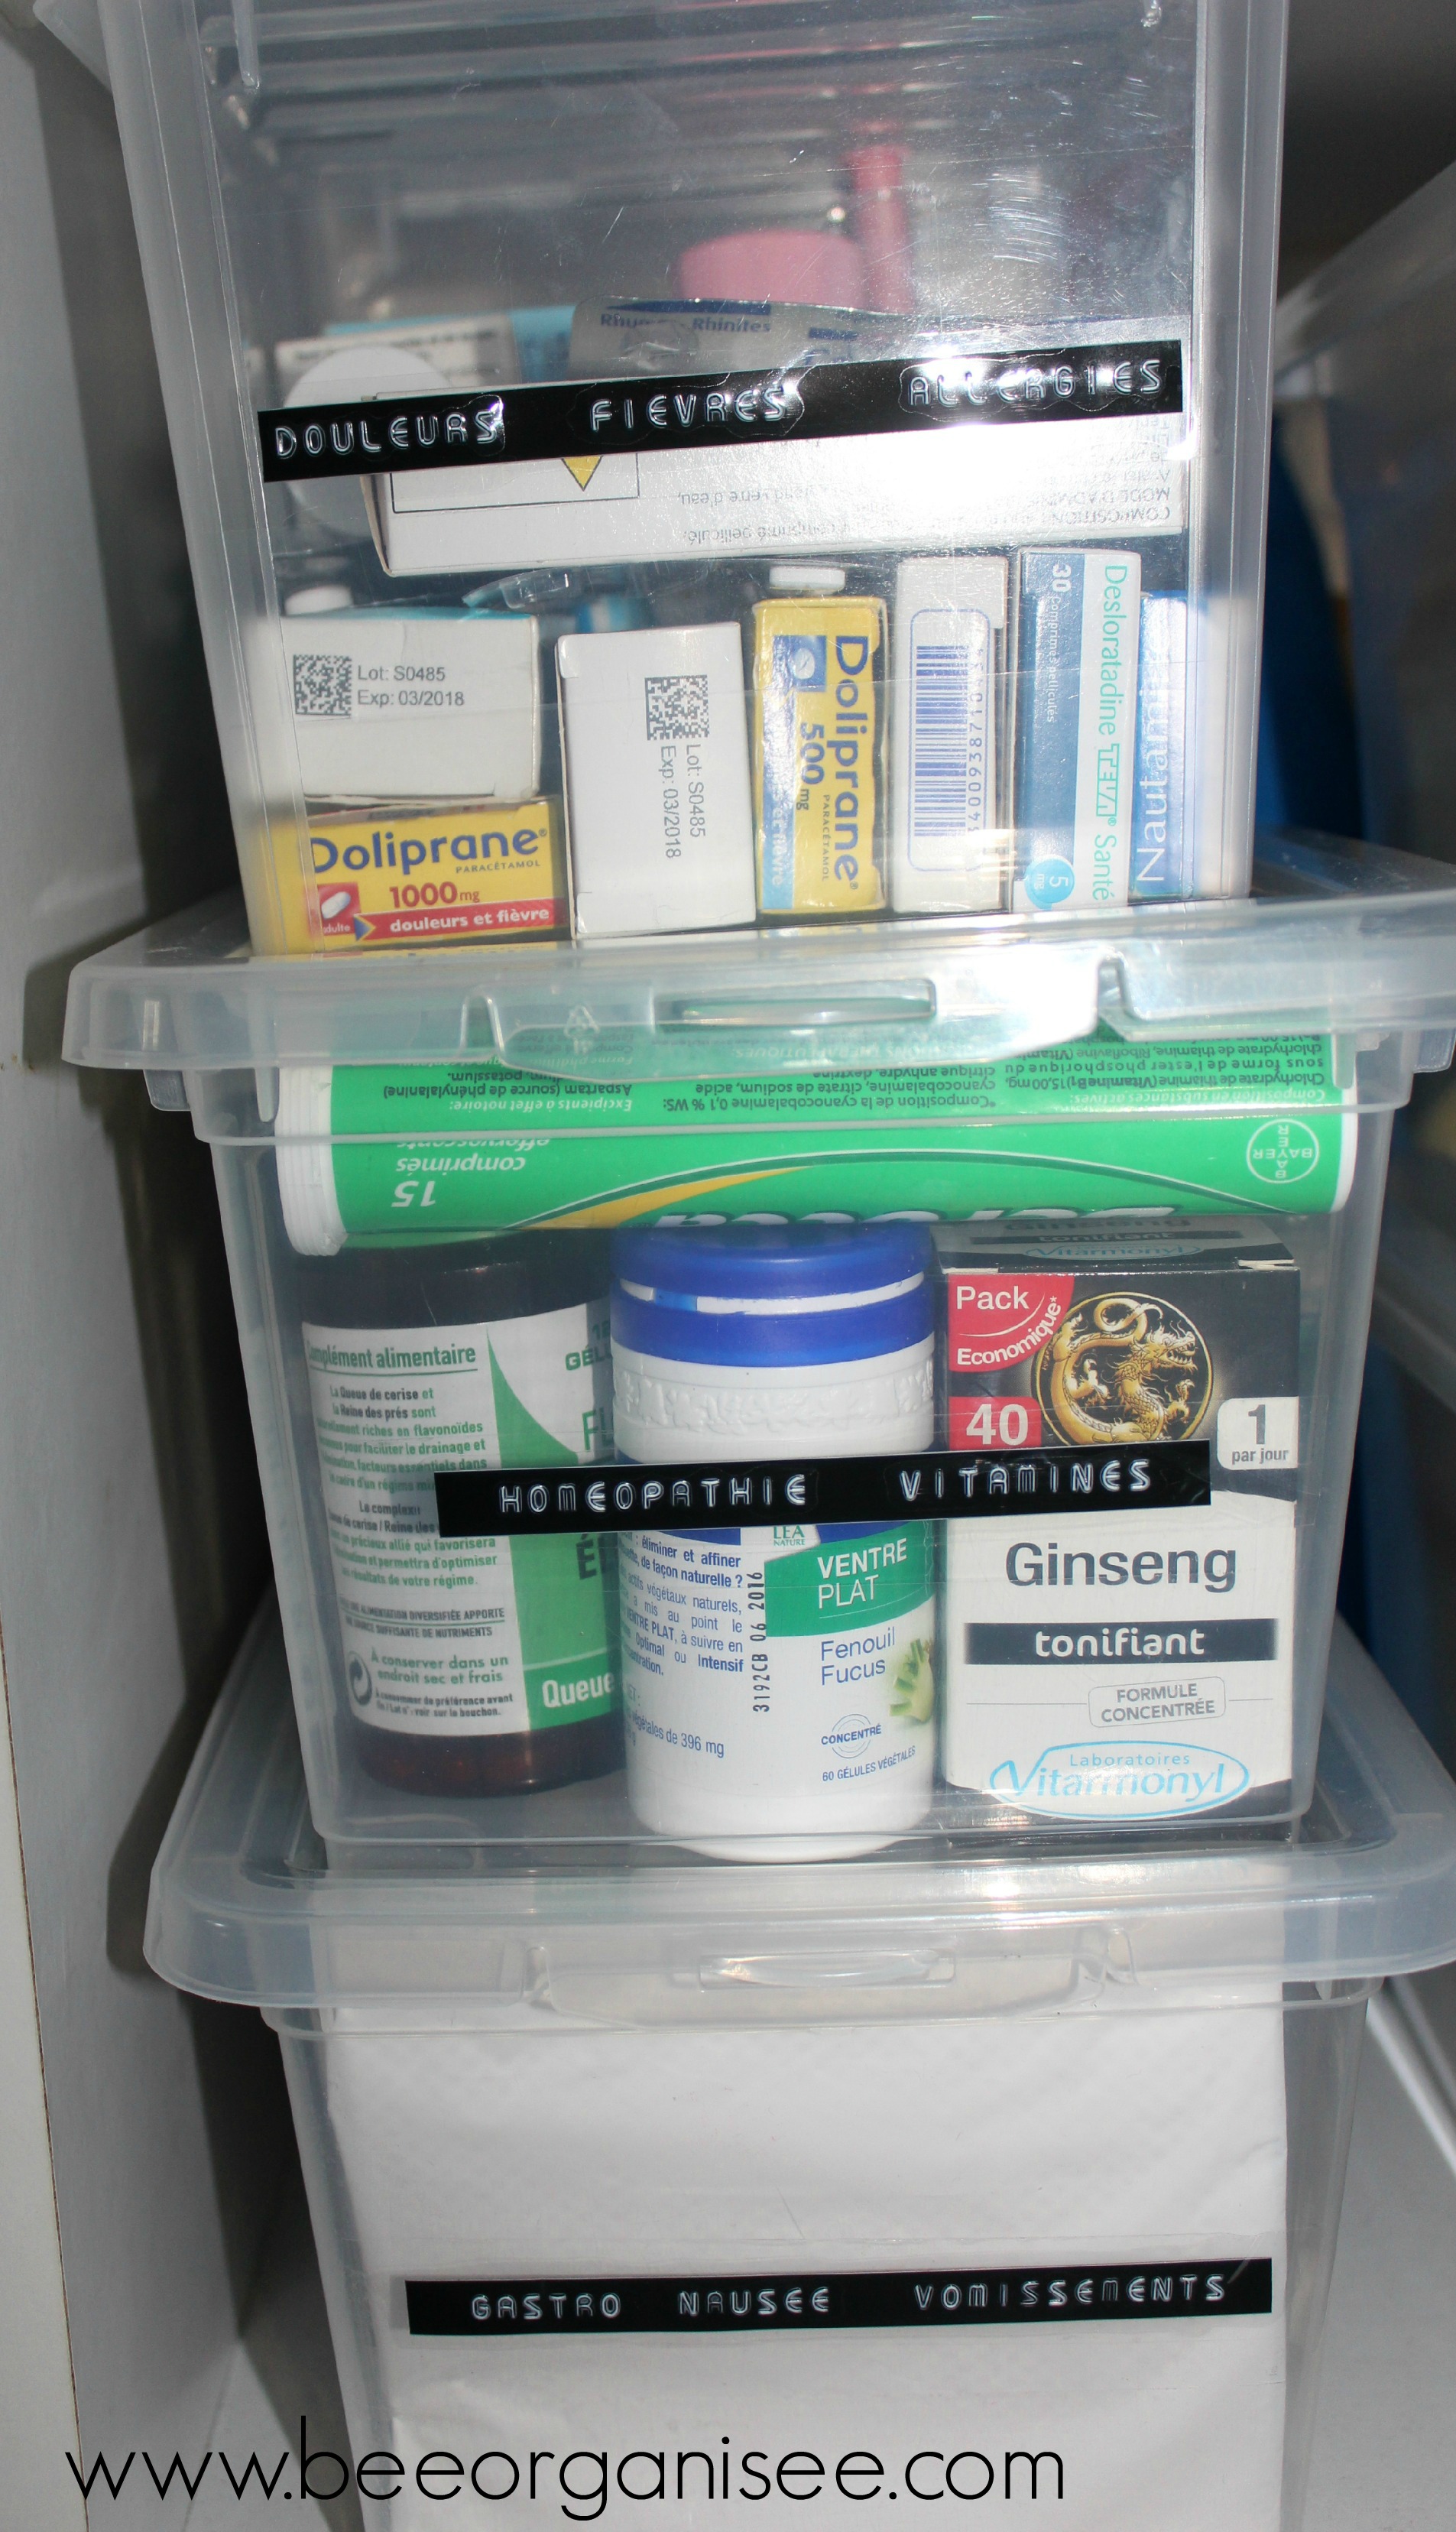 Comment ranger ses médicaments et son armoire à pharmacie ?